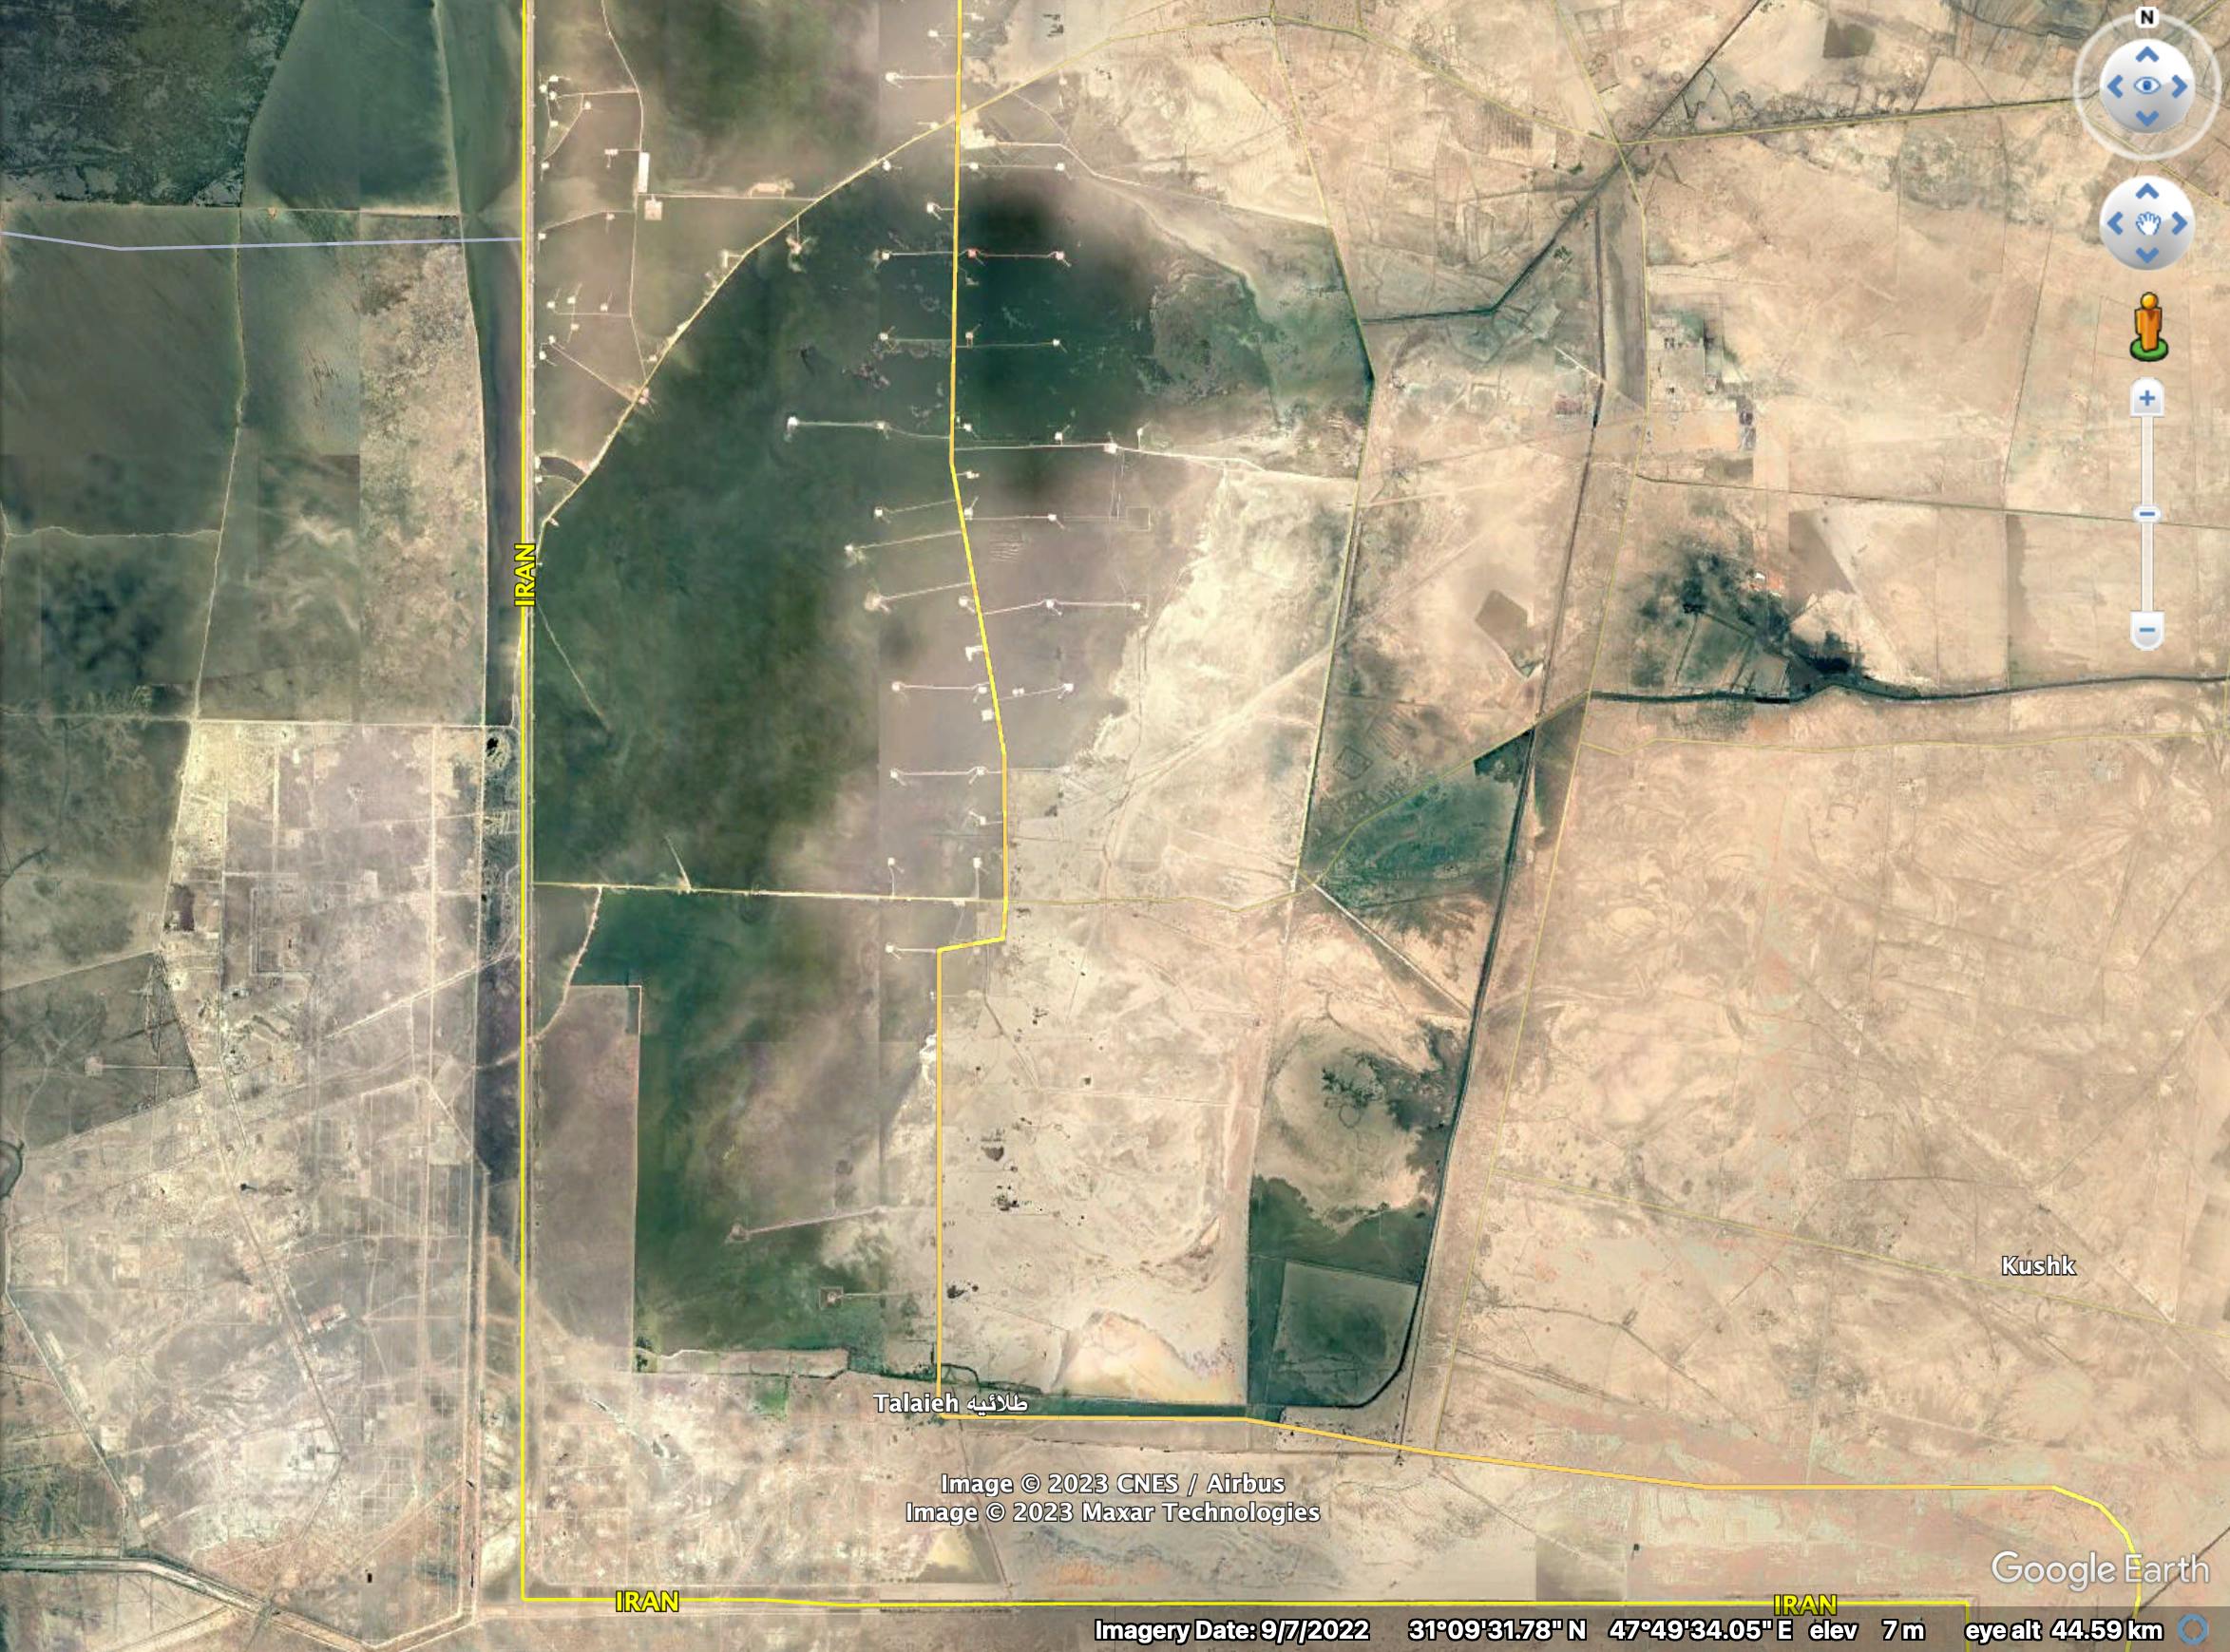 تصویر گوگل‌مپز نشان می‌دهد که چگونه با گسترش استخراج نفت، تالاب هورالعظیم گام به گام به صحرا تبدیل می‌شود.